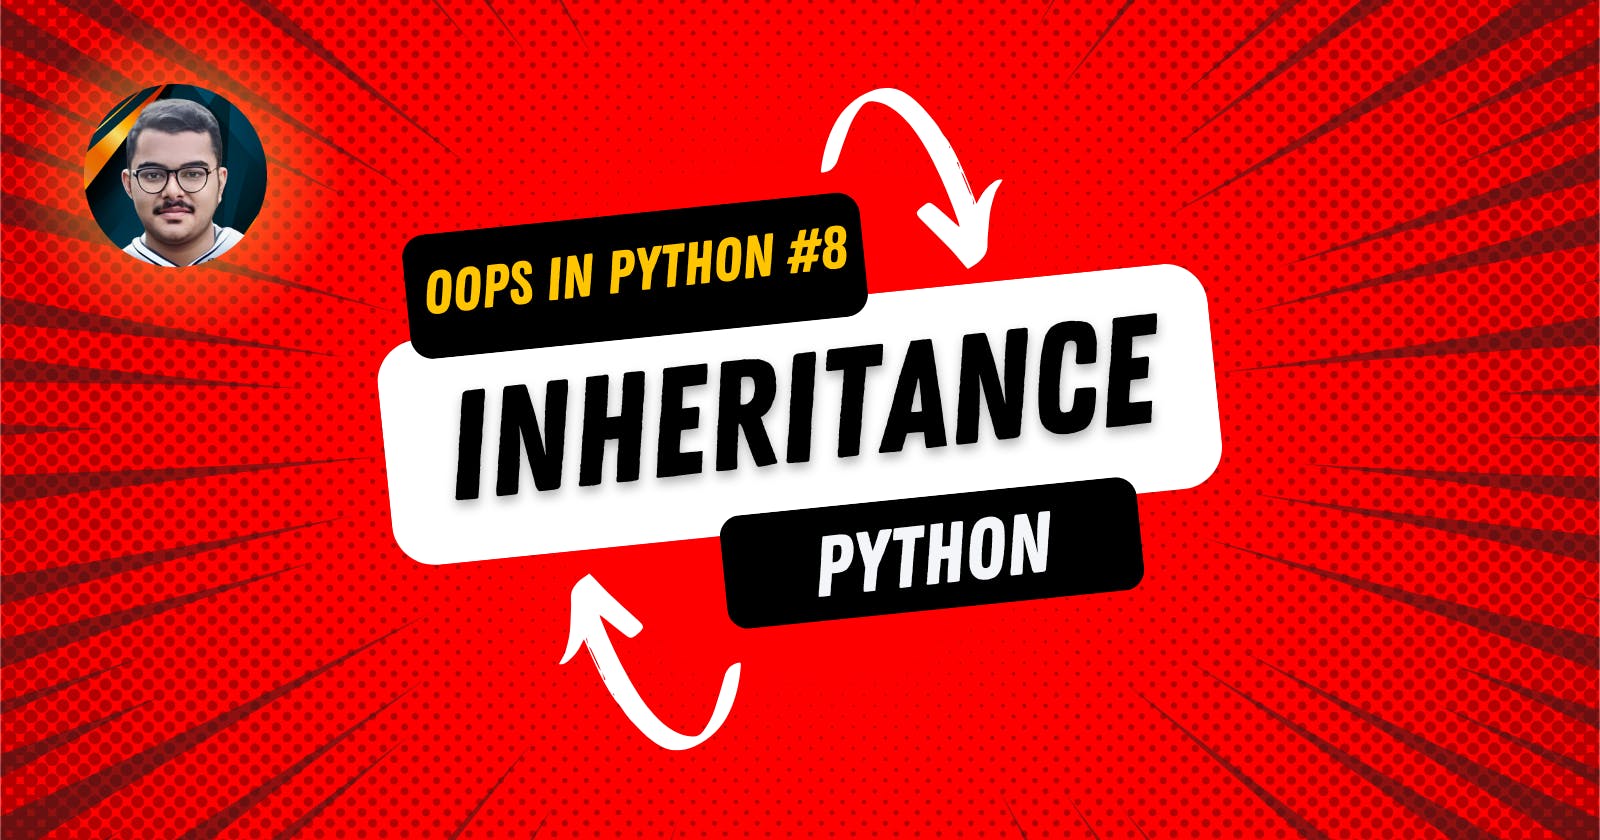 Inheritance in Python